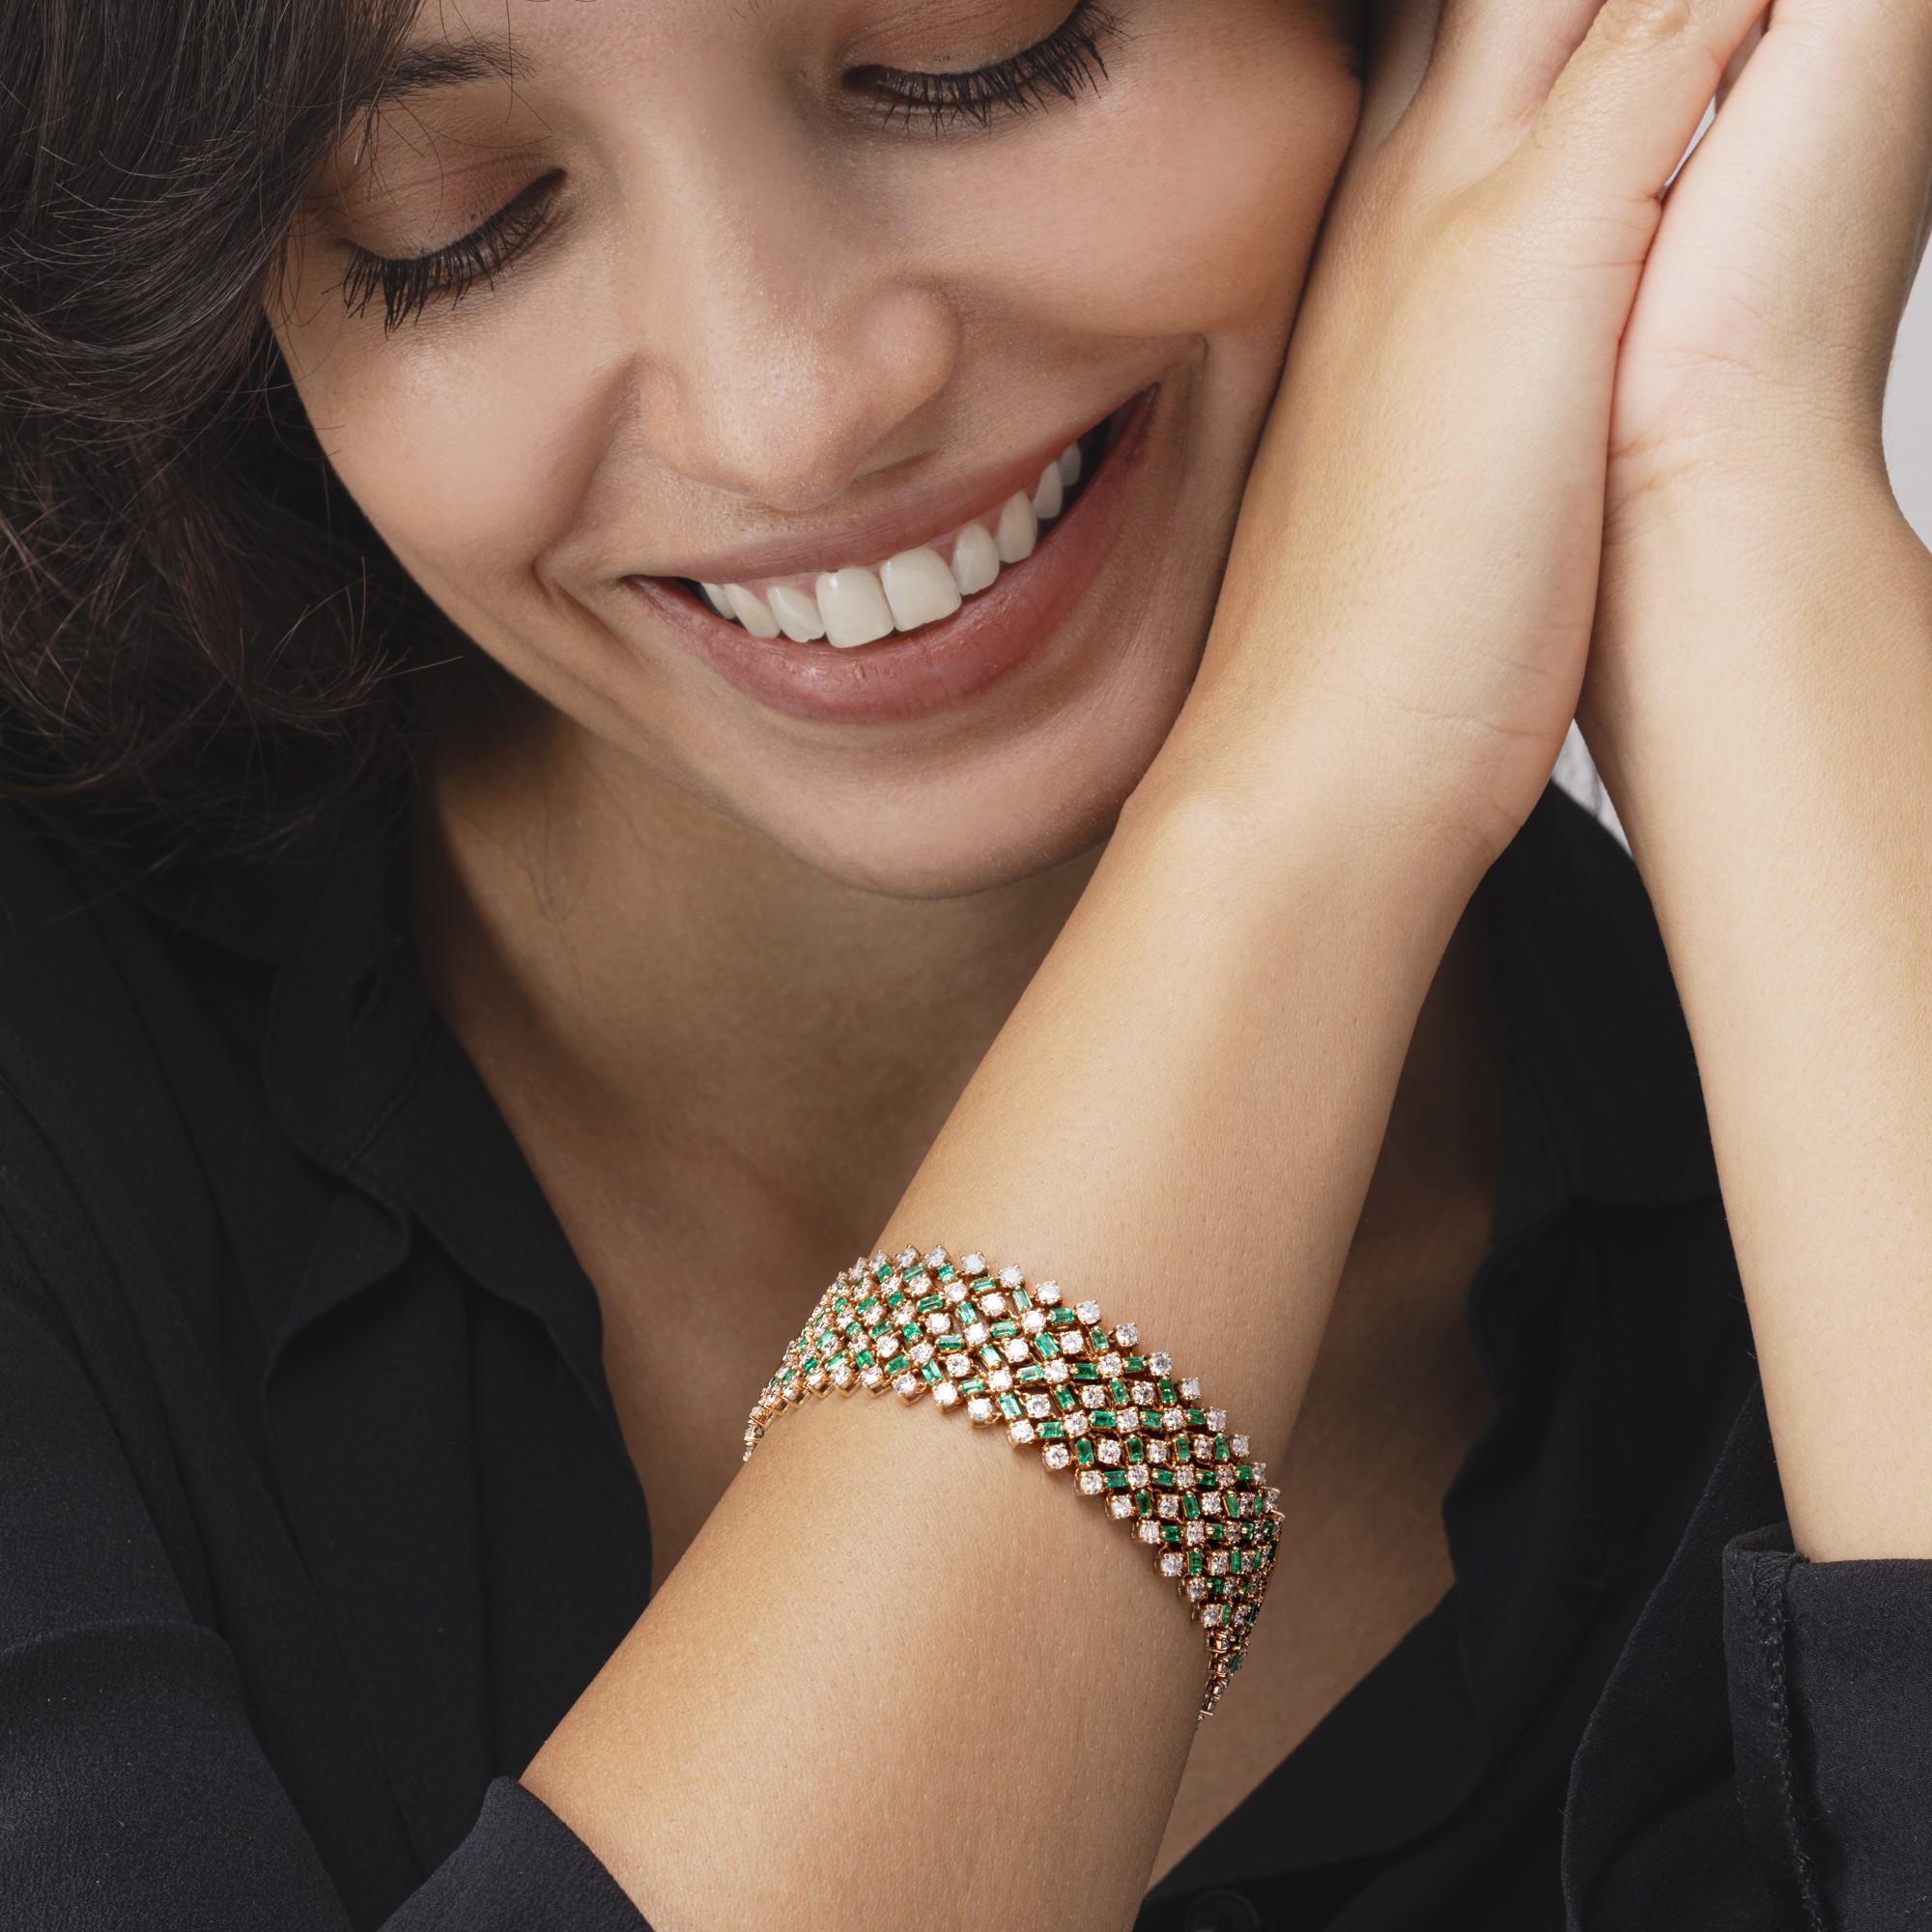 Alex Jona design collection, handgefertigt in Italien, Armband aus 18 Karat Gelbgold, besetzt mit 156 Smaragden von insgesamt 4,95 Karat und 195 weißen Diamanten von insgesamt 11,43 Karat.
Die Juwelen von Alex Jona zeichnen sich nicht nur durch ihr